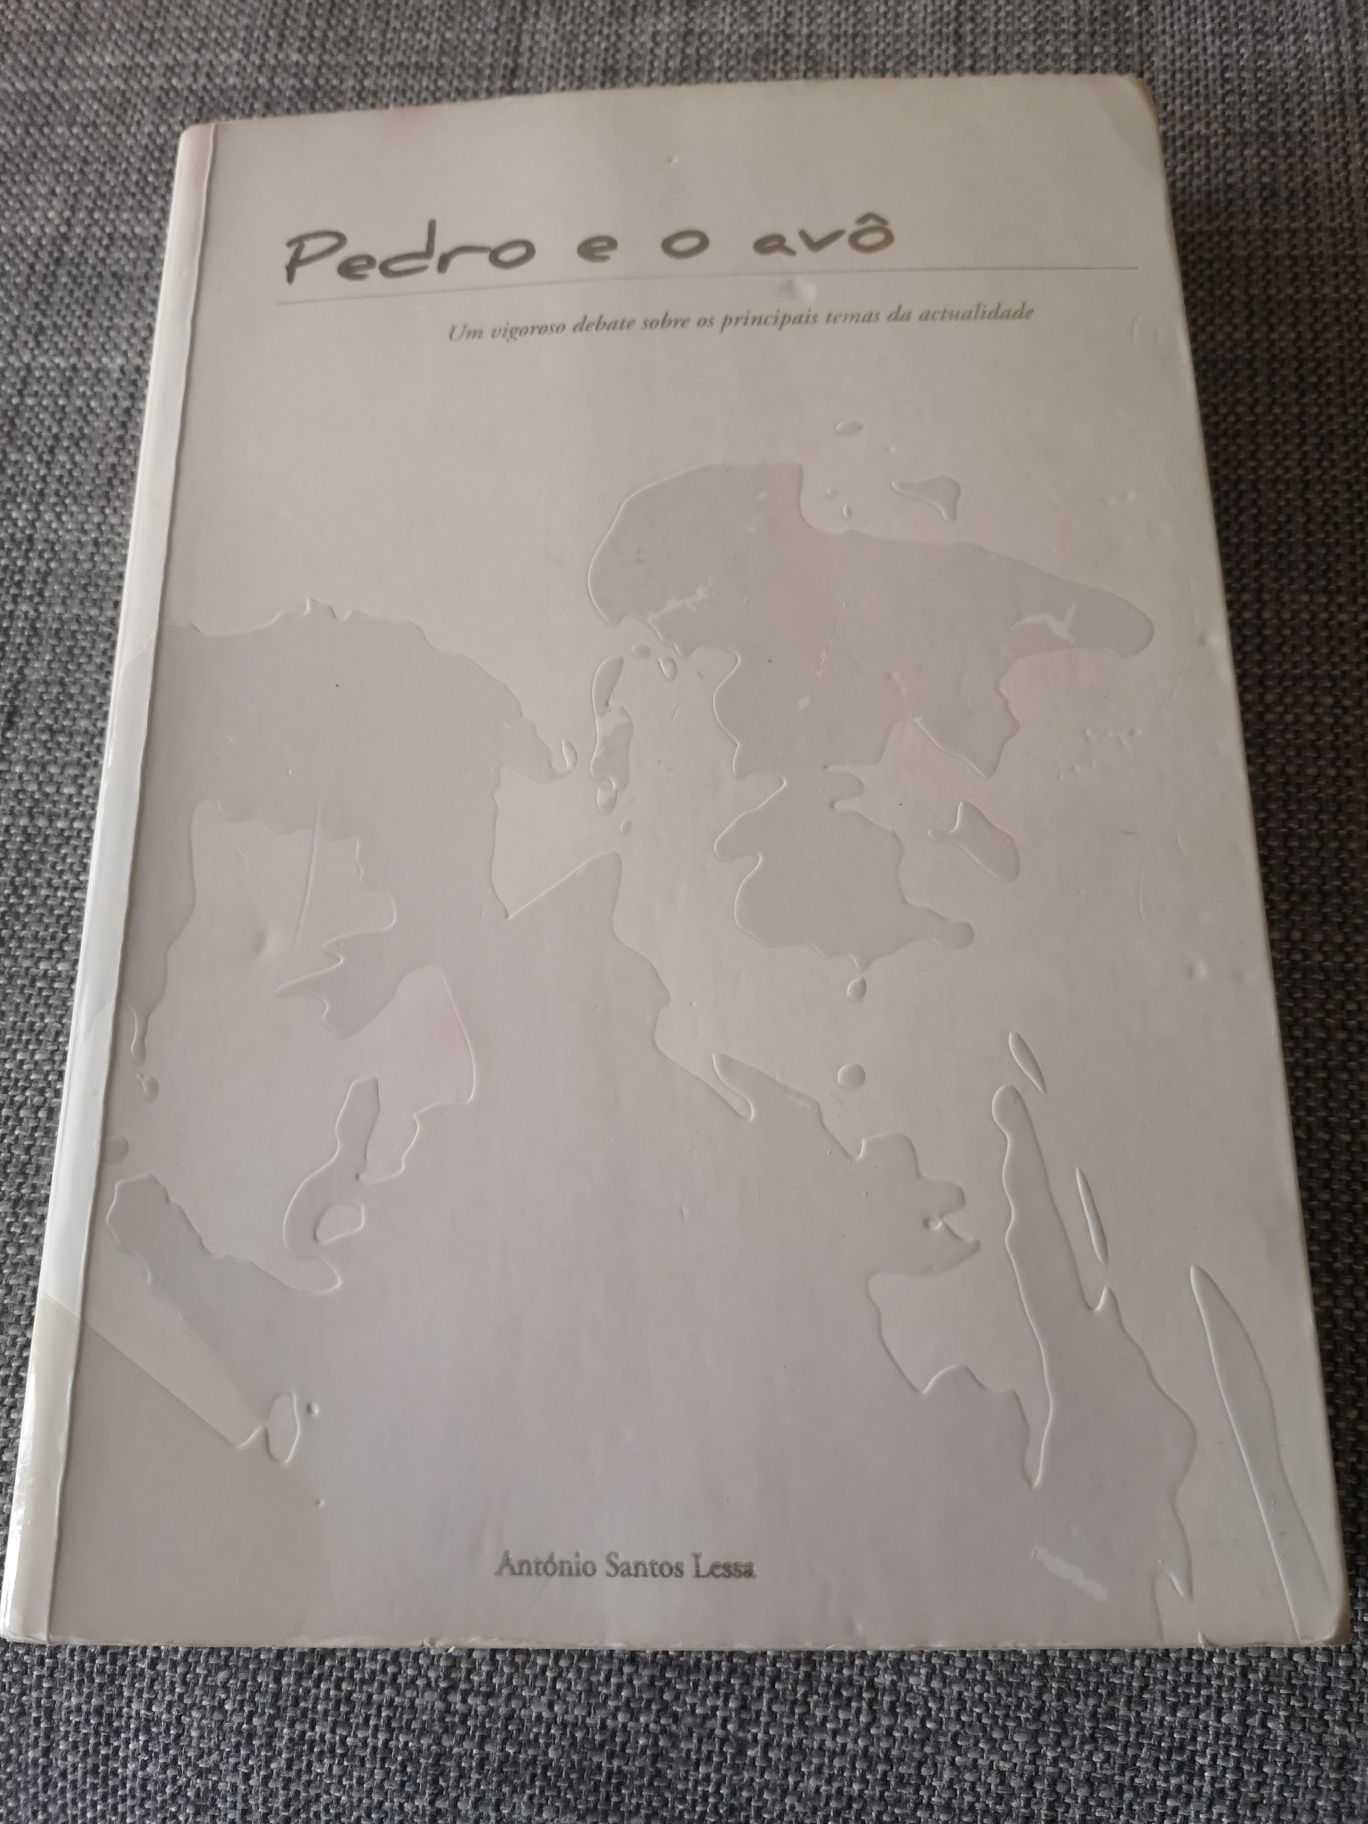 Livro Pedro e o avô